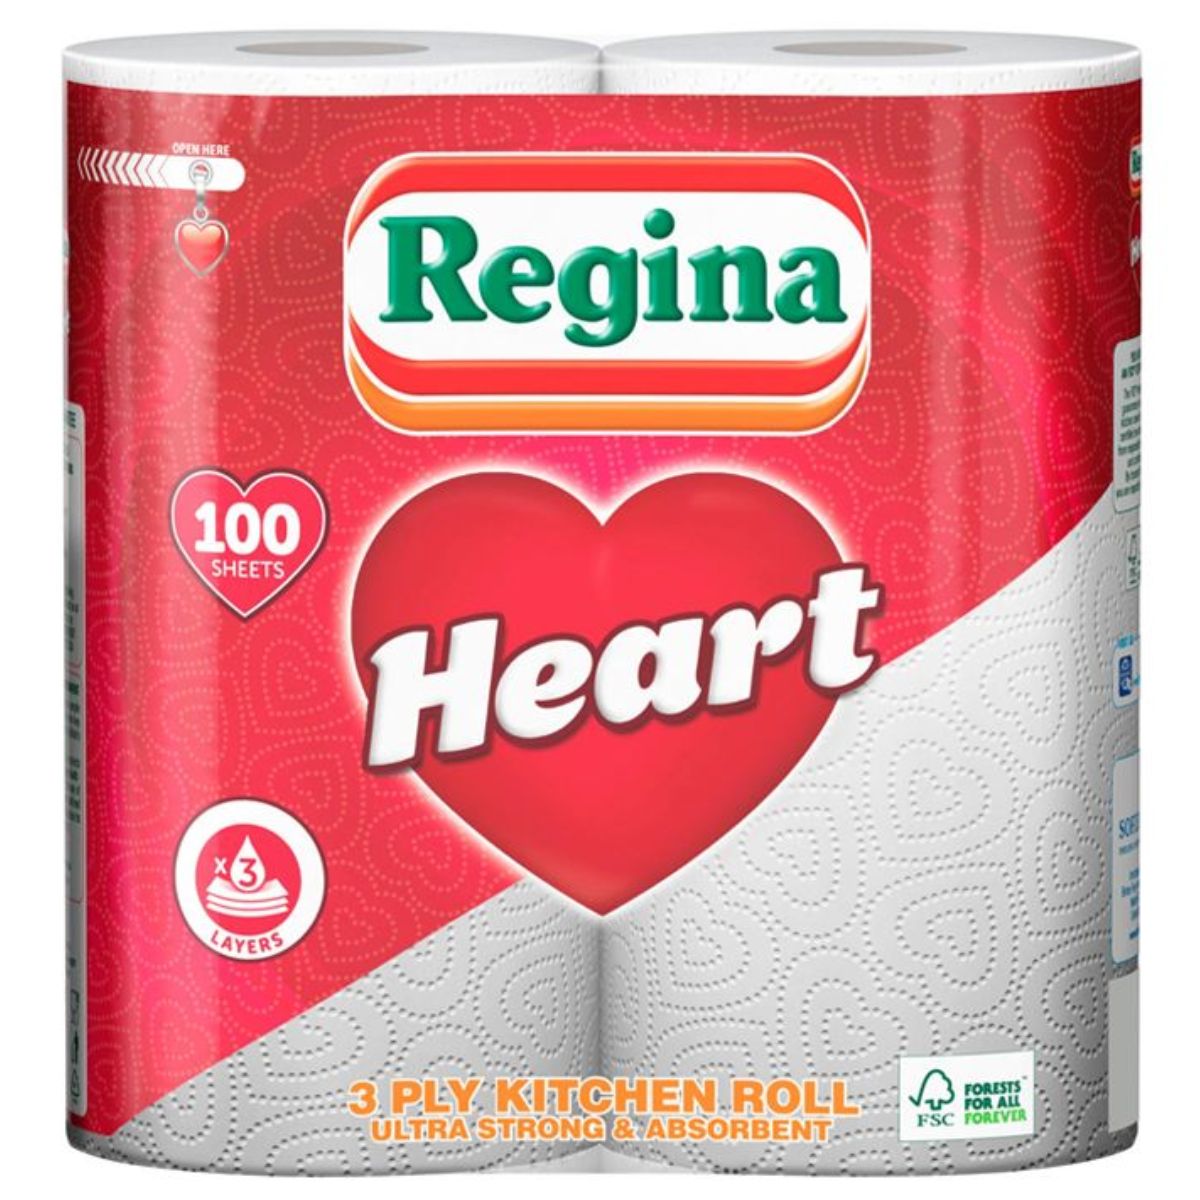 Regina heart kitchen towel - 2pcs toilet paper.